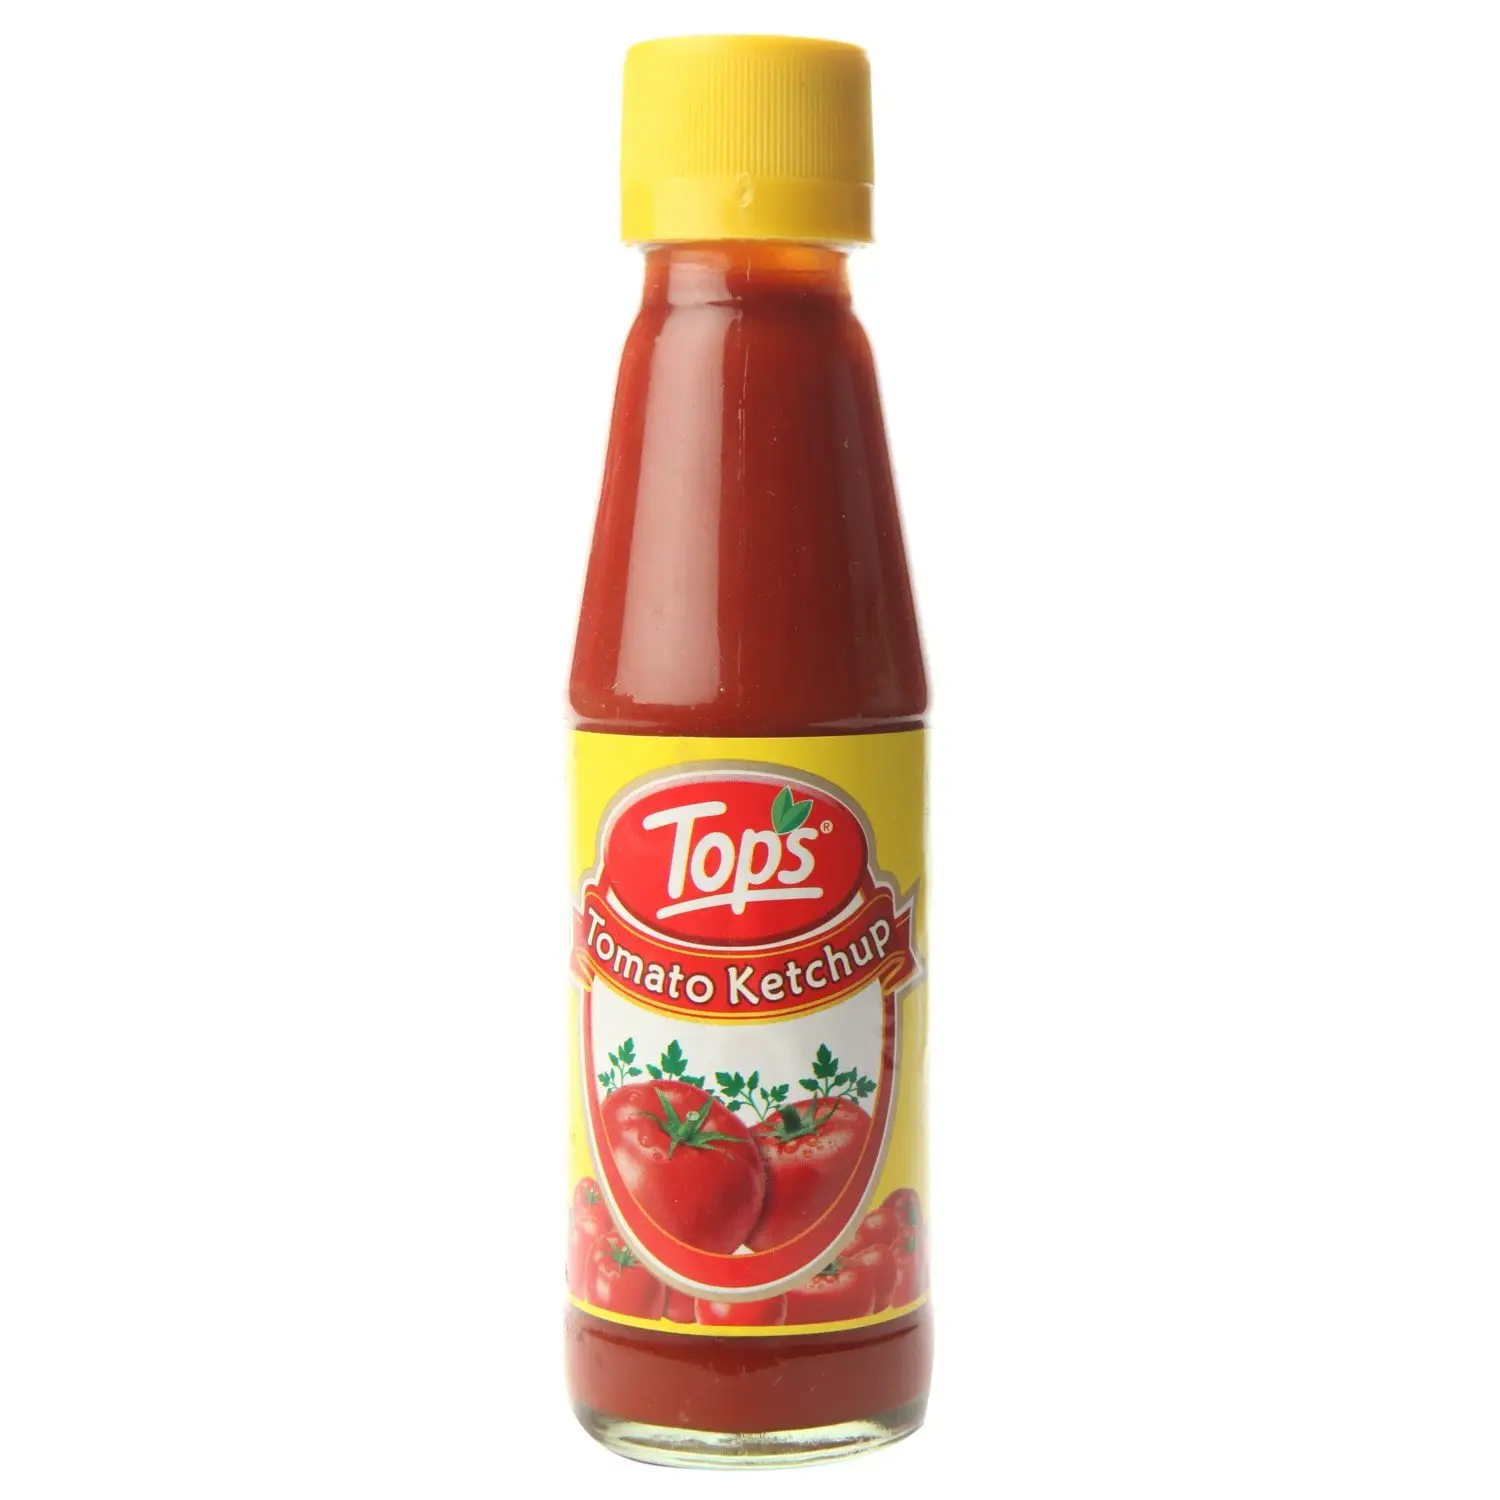 Migliore Qualità Ketchup Per La Vendita di Pomodoro Ketchup Fornitori